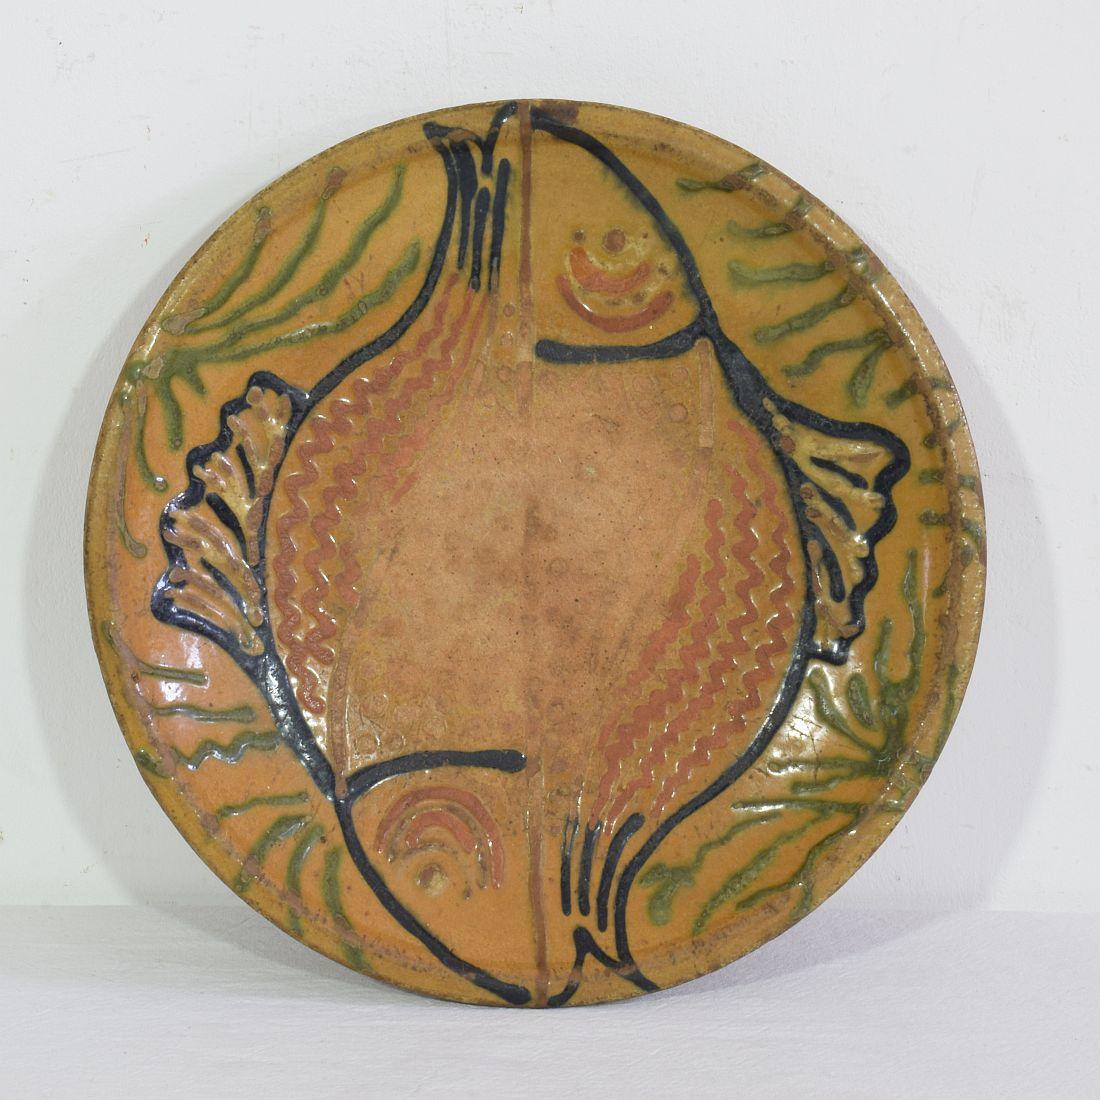 Merveilleux vitrage  plat/ bol en céramique représentant deux poissons. Une belle œuvre d'art populaire.
France vers 1850-1900. Usé